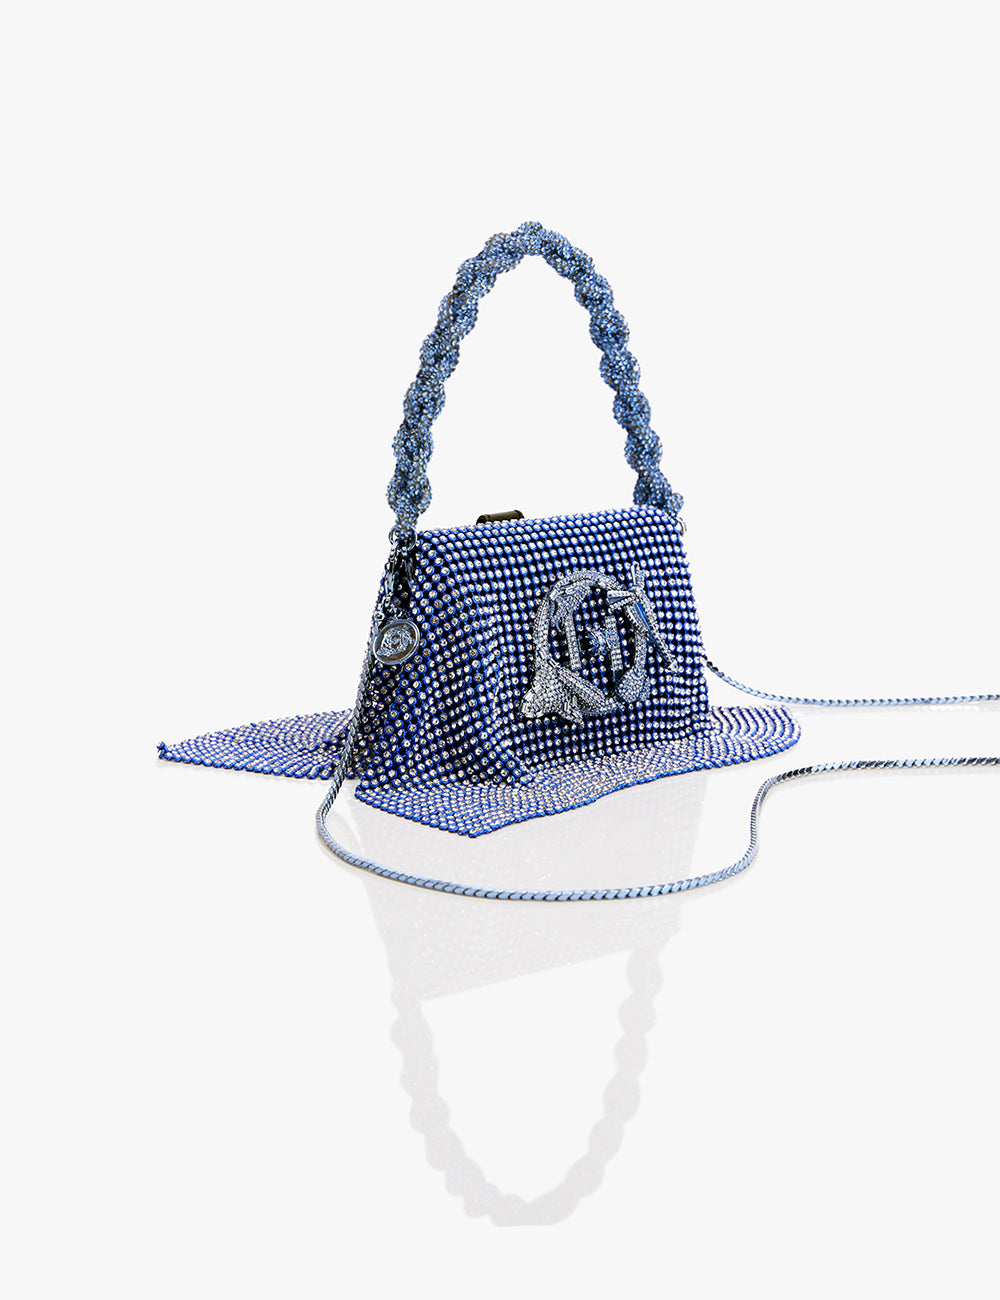 Designer Bags Inspired by Women: Jane Birkin, Grace Kelly, Jackie O